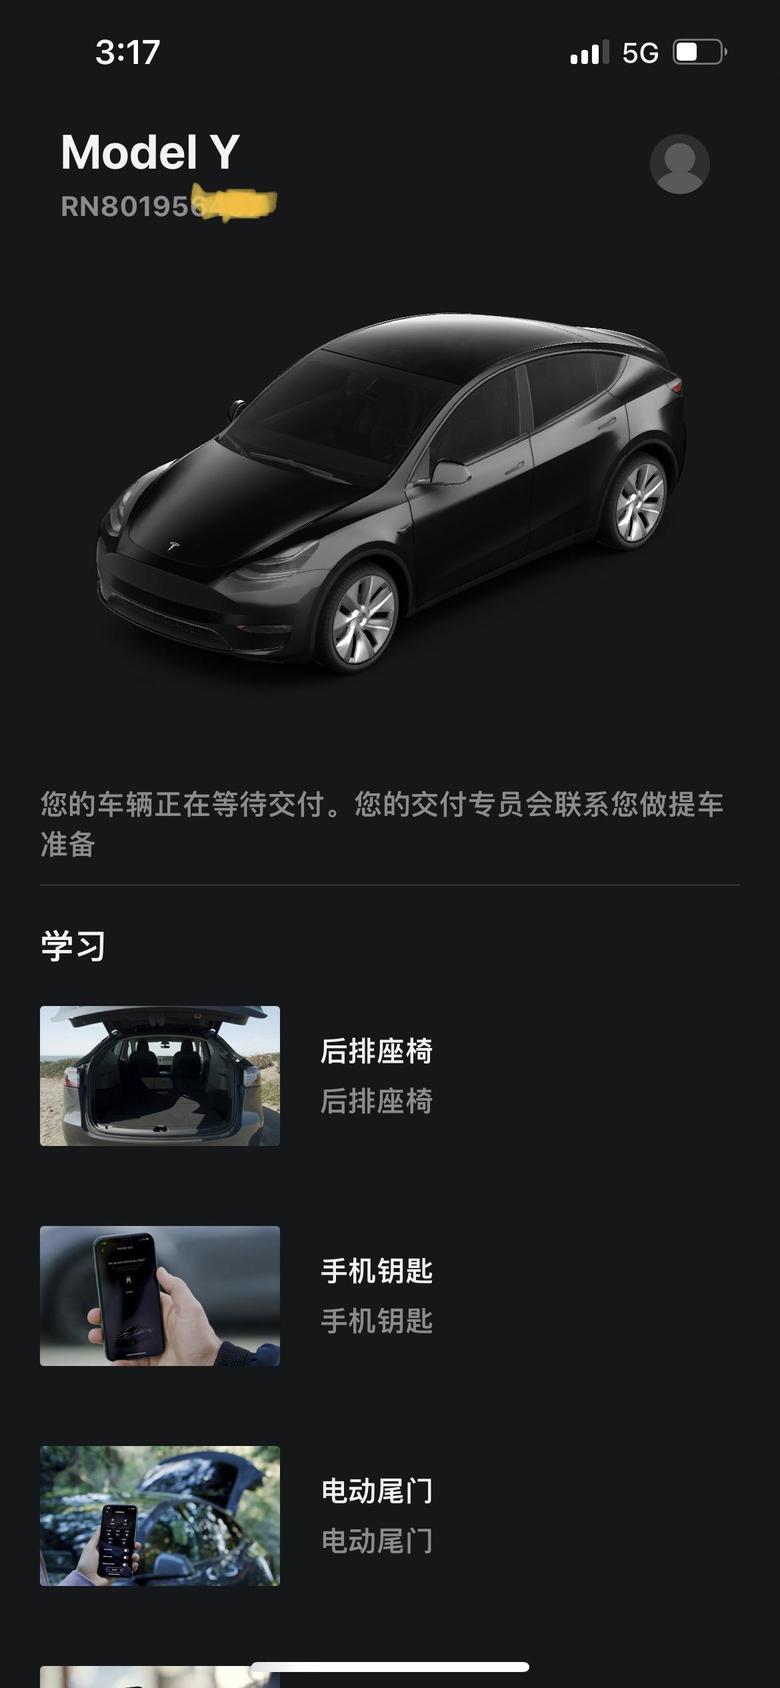 model y 坐标上海19这个月能提车吗有大哥告诉一下吗